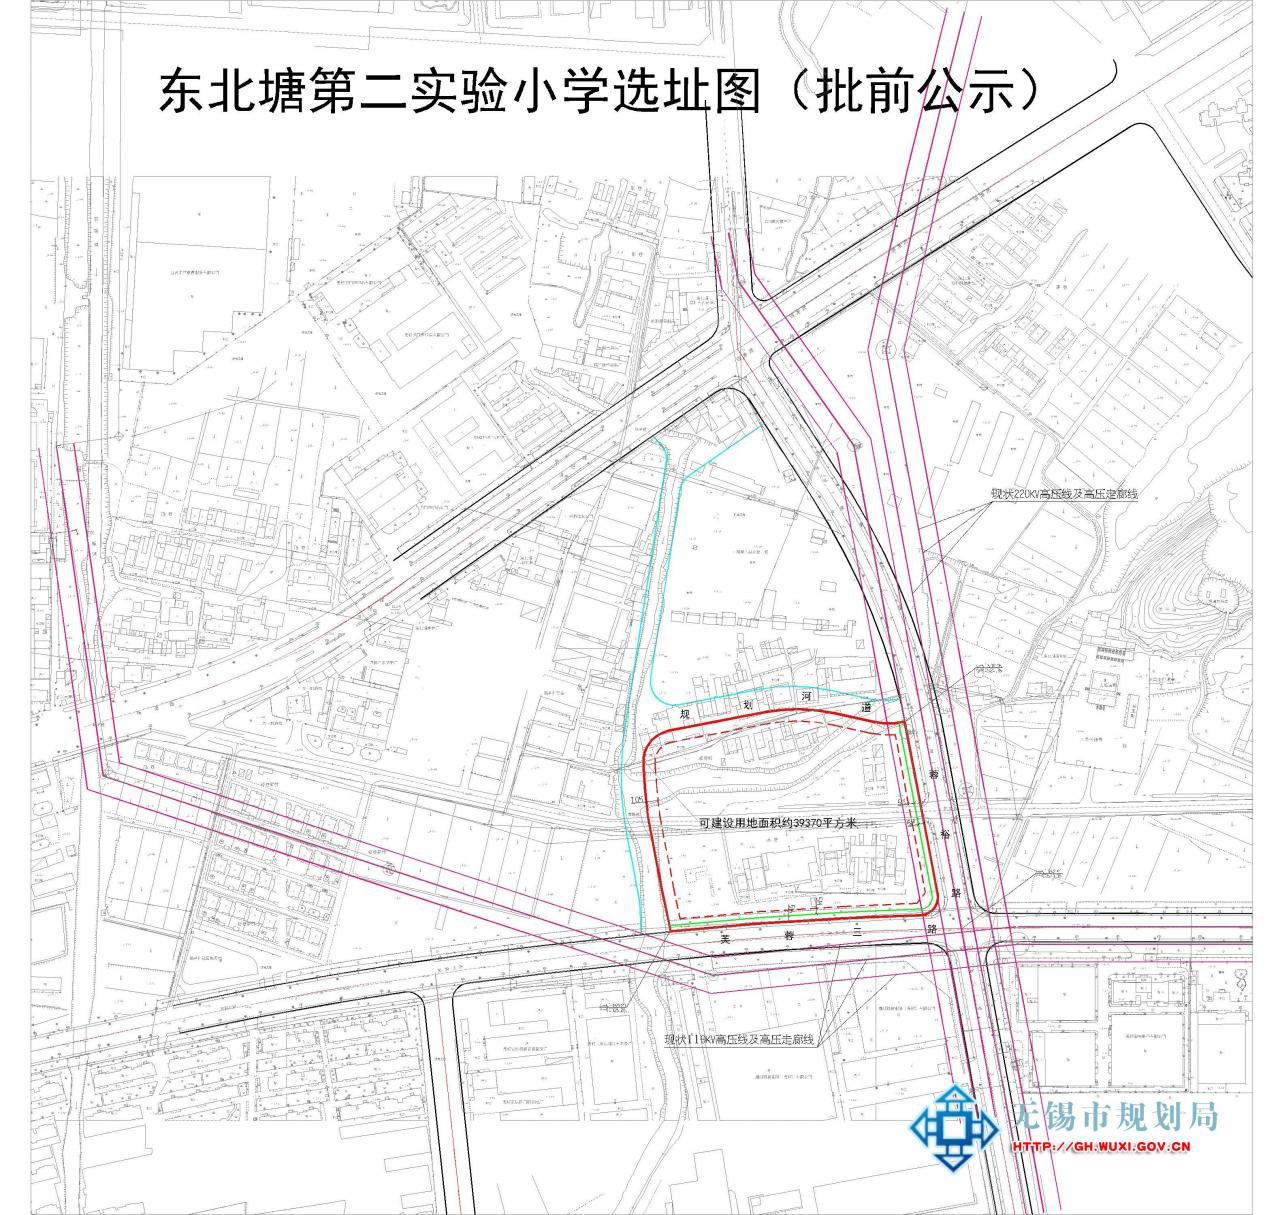 东北塘第二实验小学建设项目选址意见书批前公示